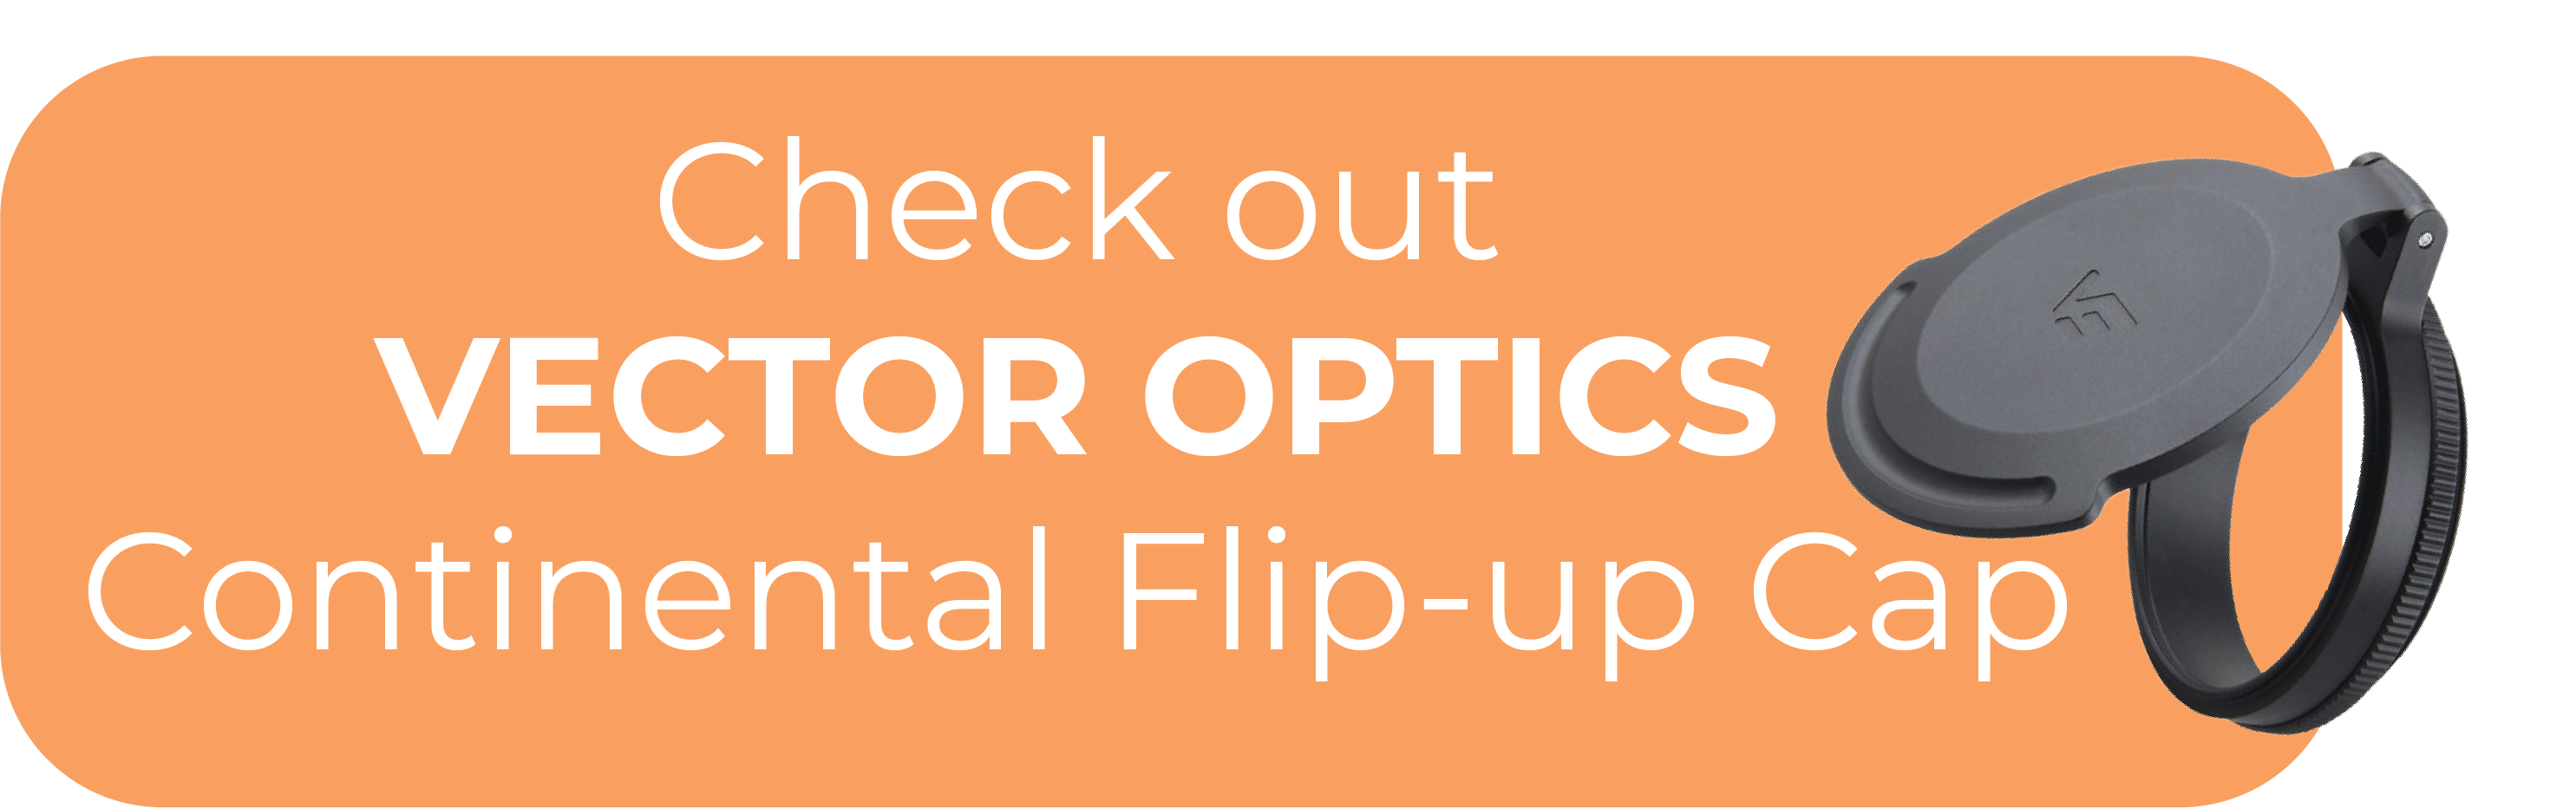 Vector Optics Continental Flip-up Cap